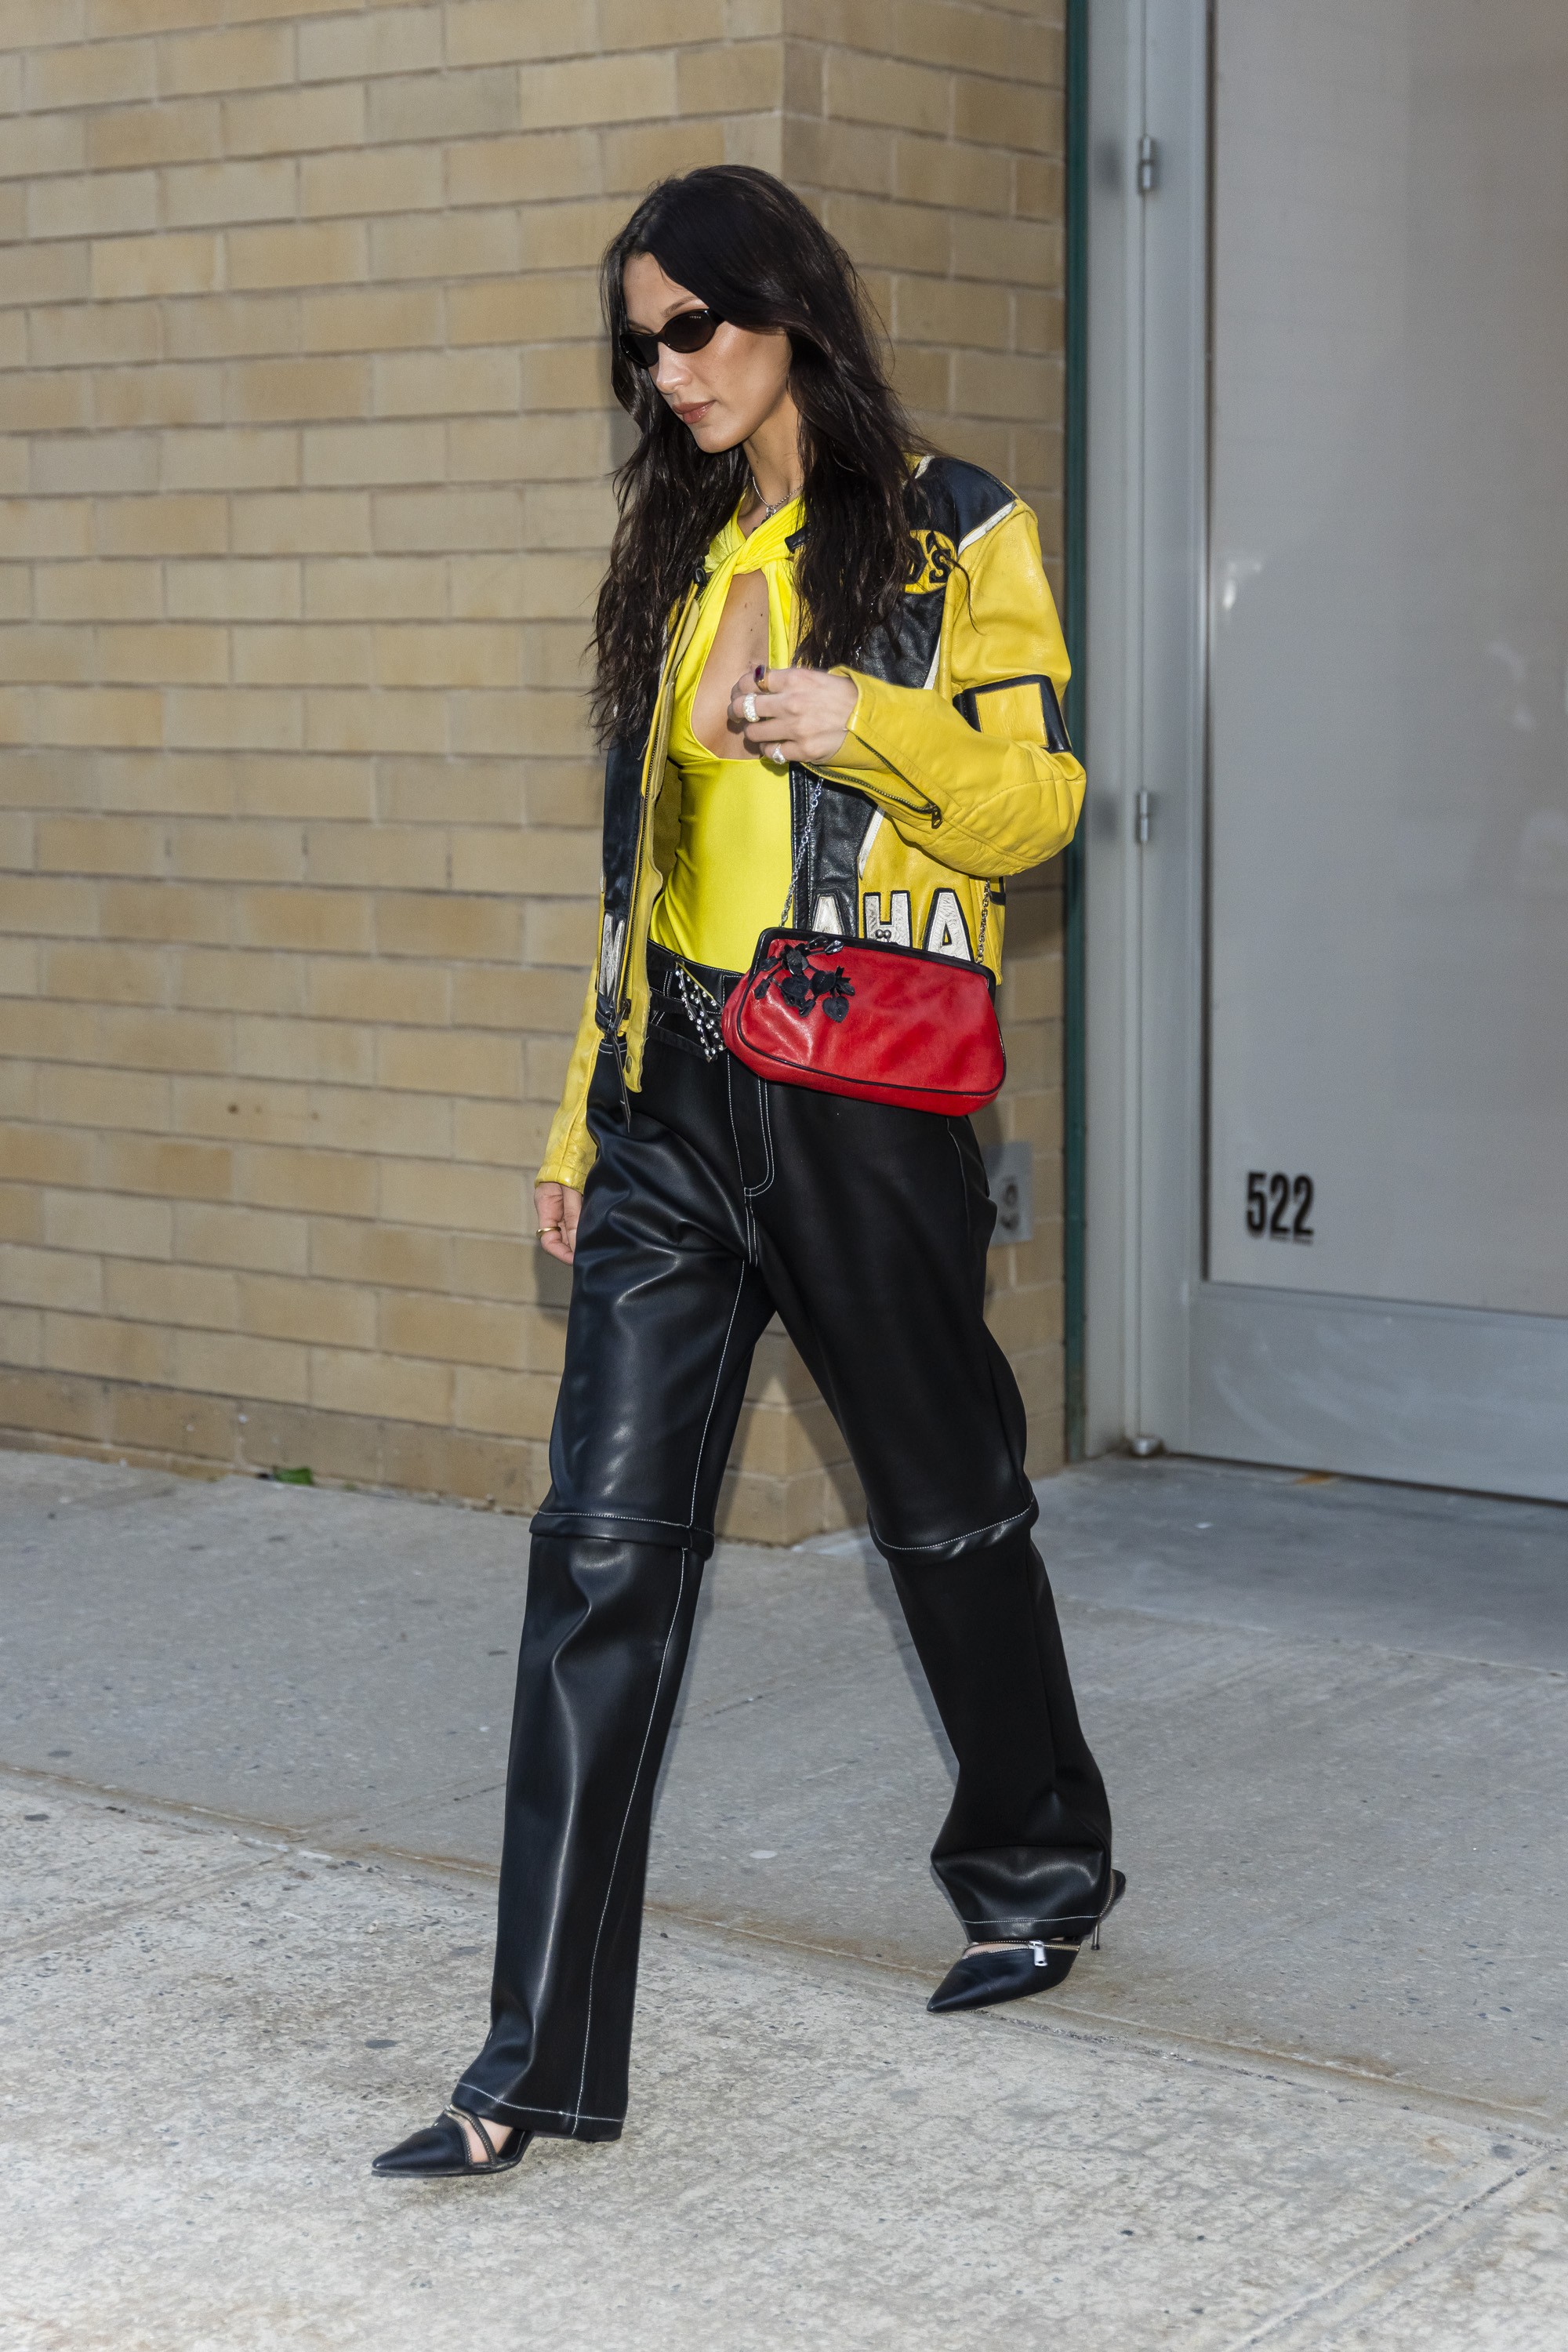 Bella Hadid usando look com referências da estética bikercore com jaqueta de couro amarela e preta, calça de couro e bolsa vermelha